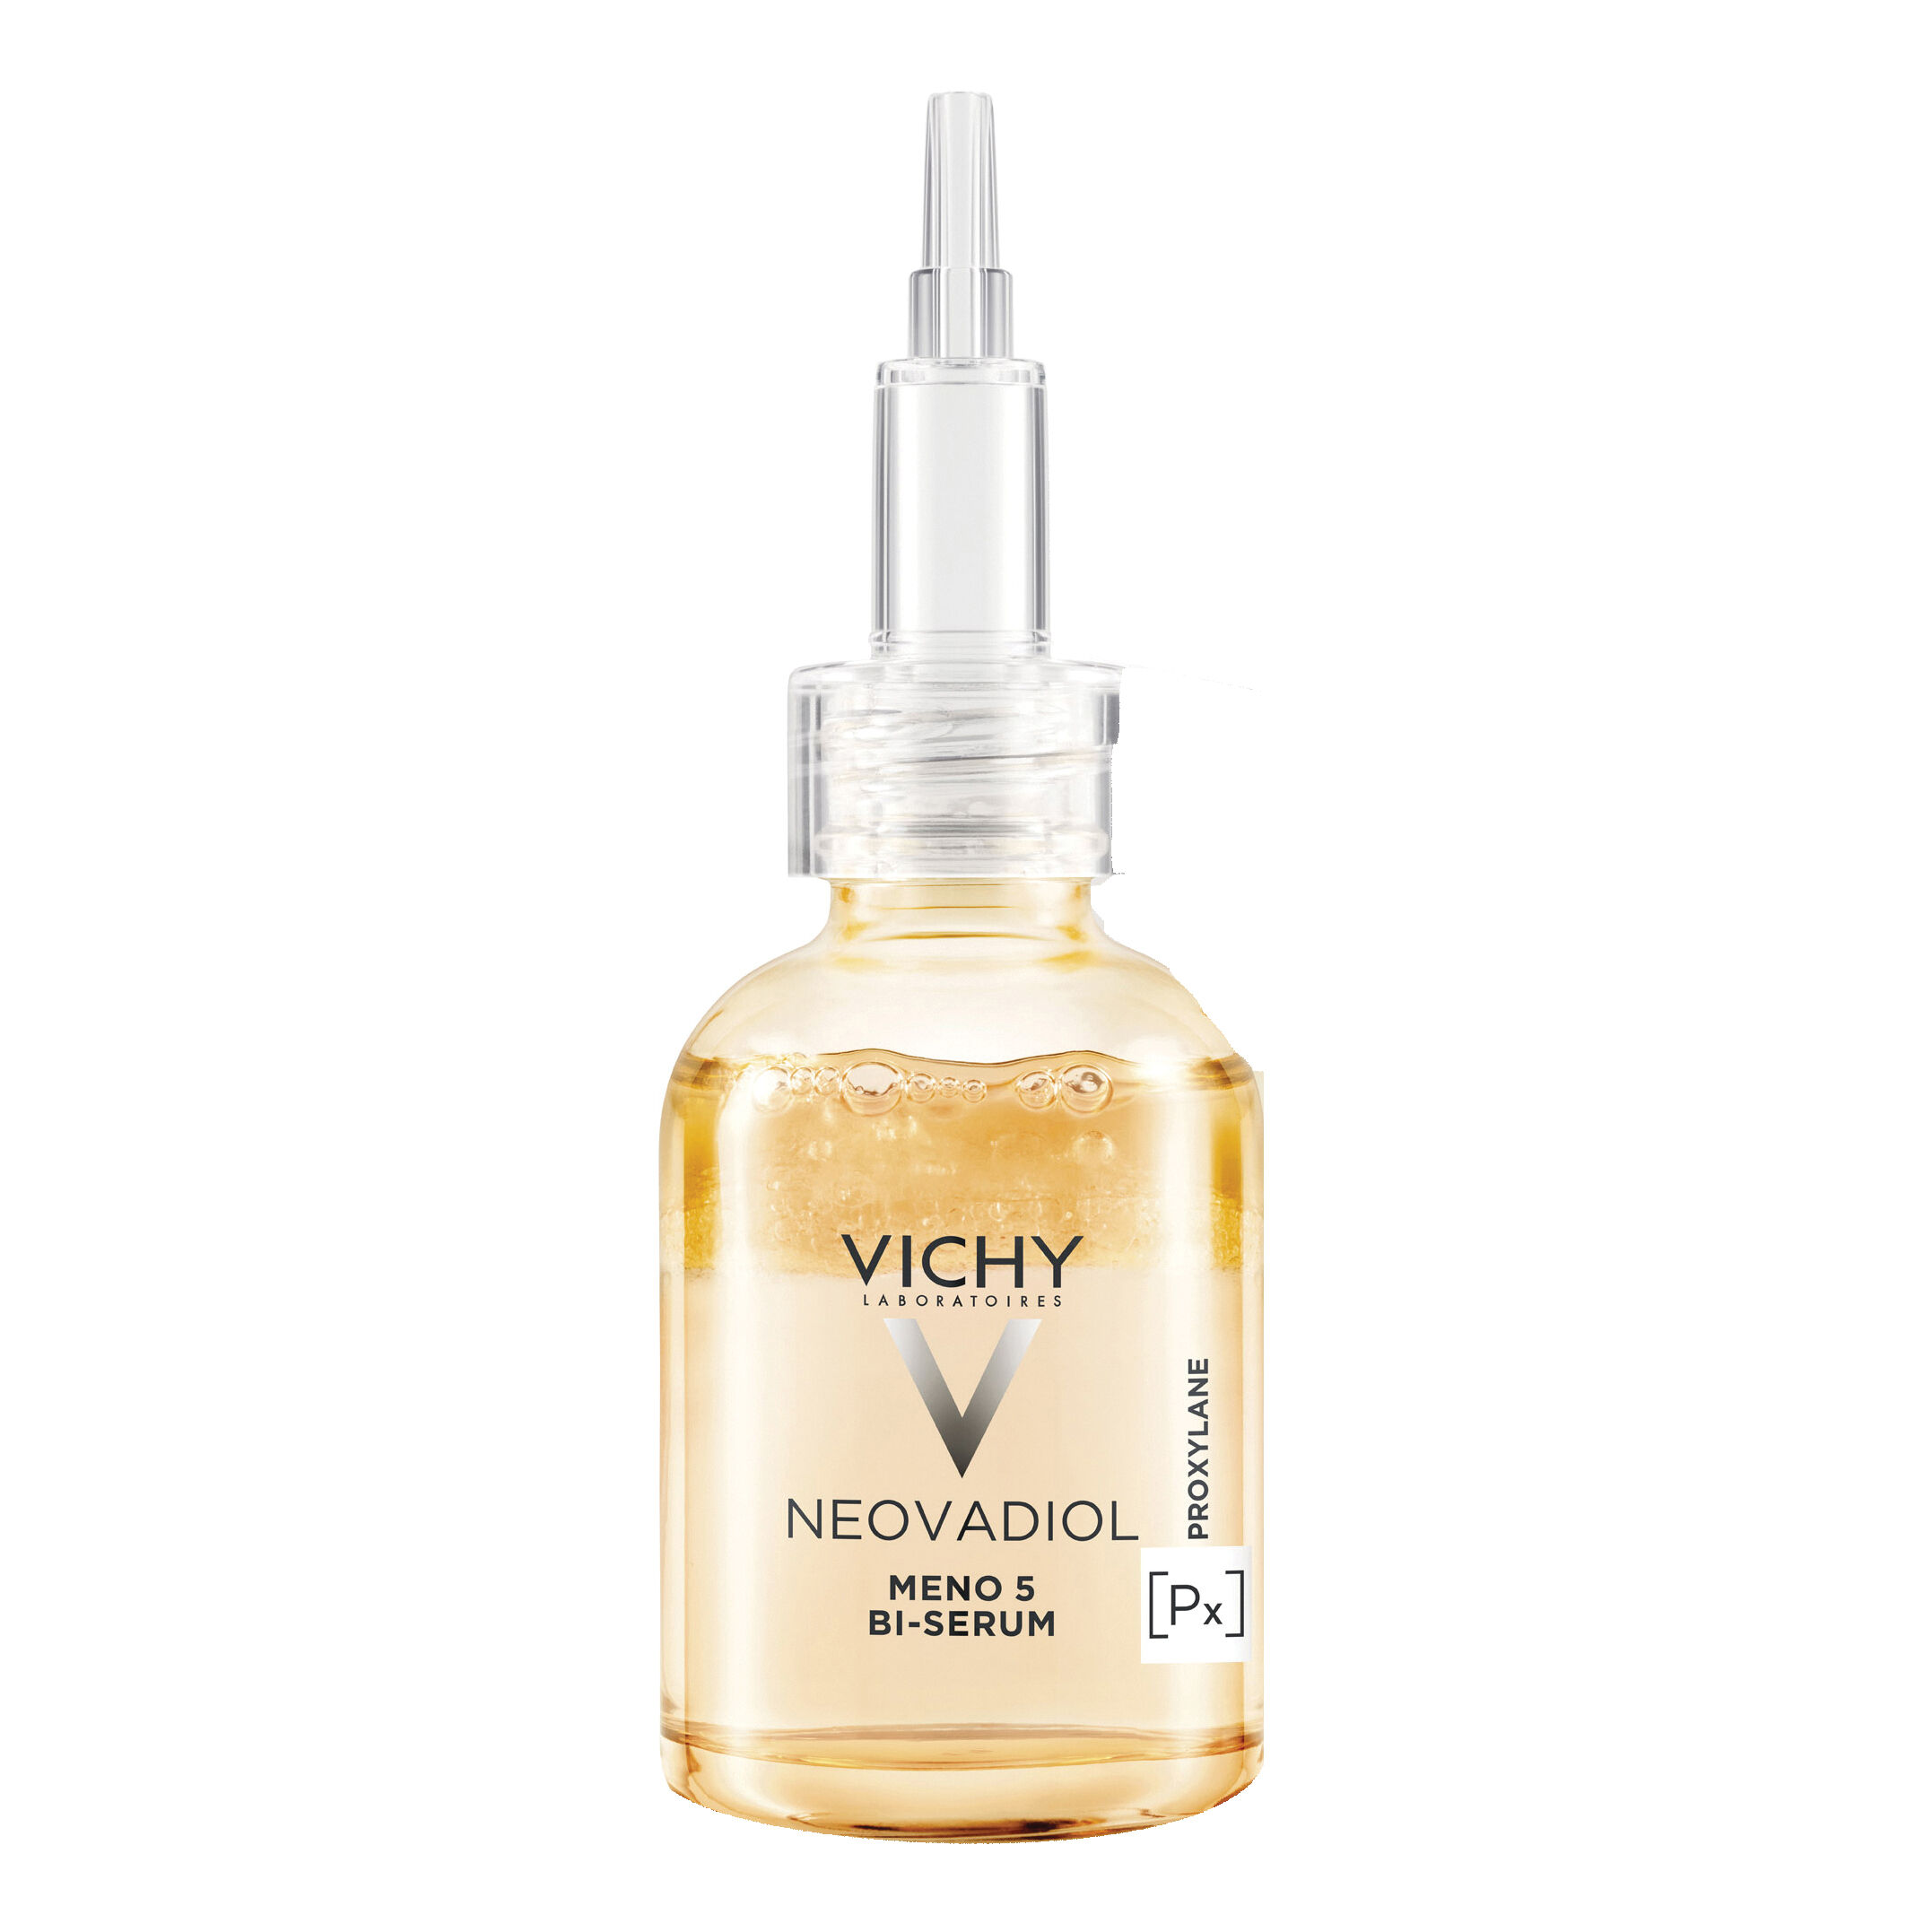 Vichy Neovadiol menopausa siero bifasico solution 5 30 ml